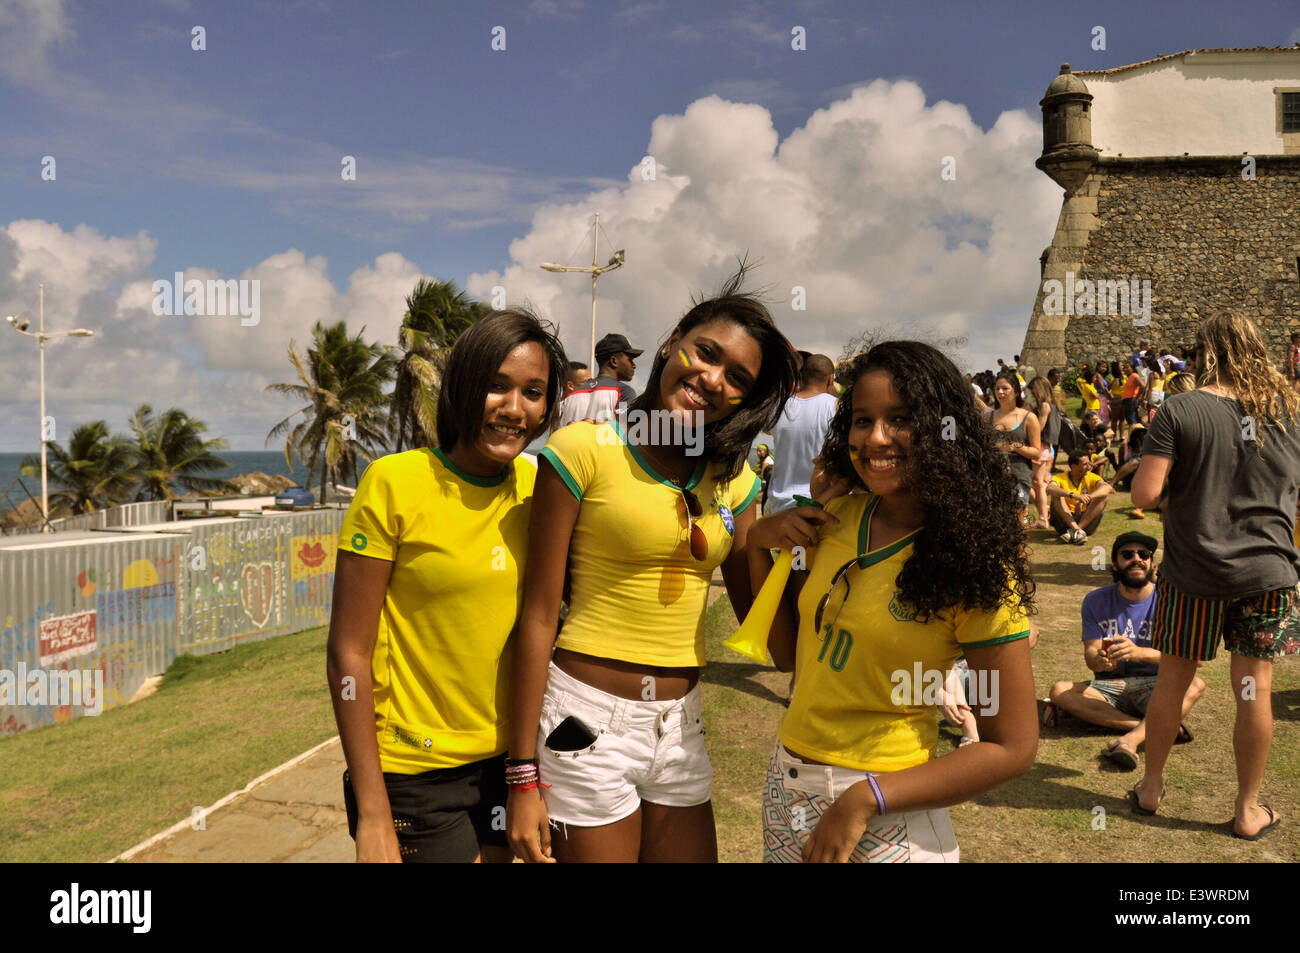 Fifa Fan Fest, affichage public, WM 2014, Brésil et Chili, Barra, Salvador da Bahia, Brésil. Usage éditorial uniquement. Banque D'Images